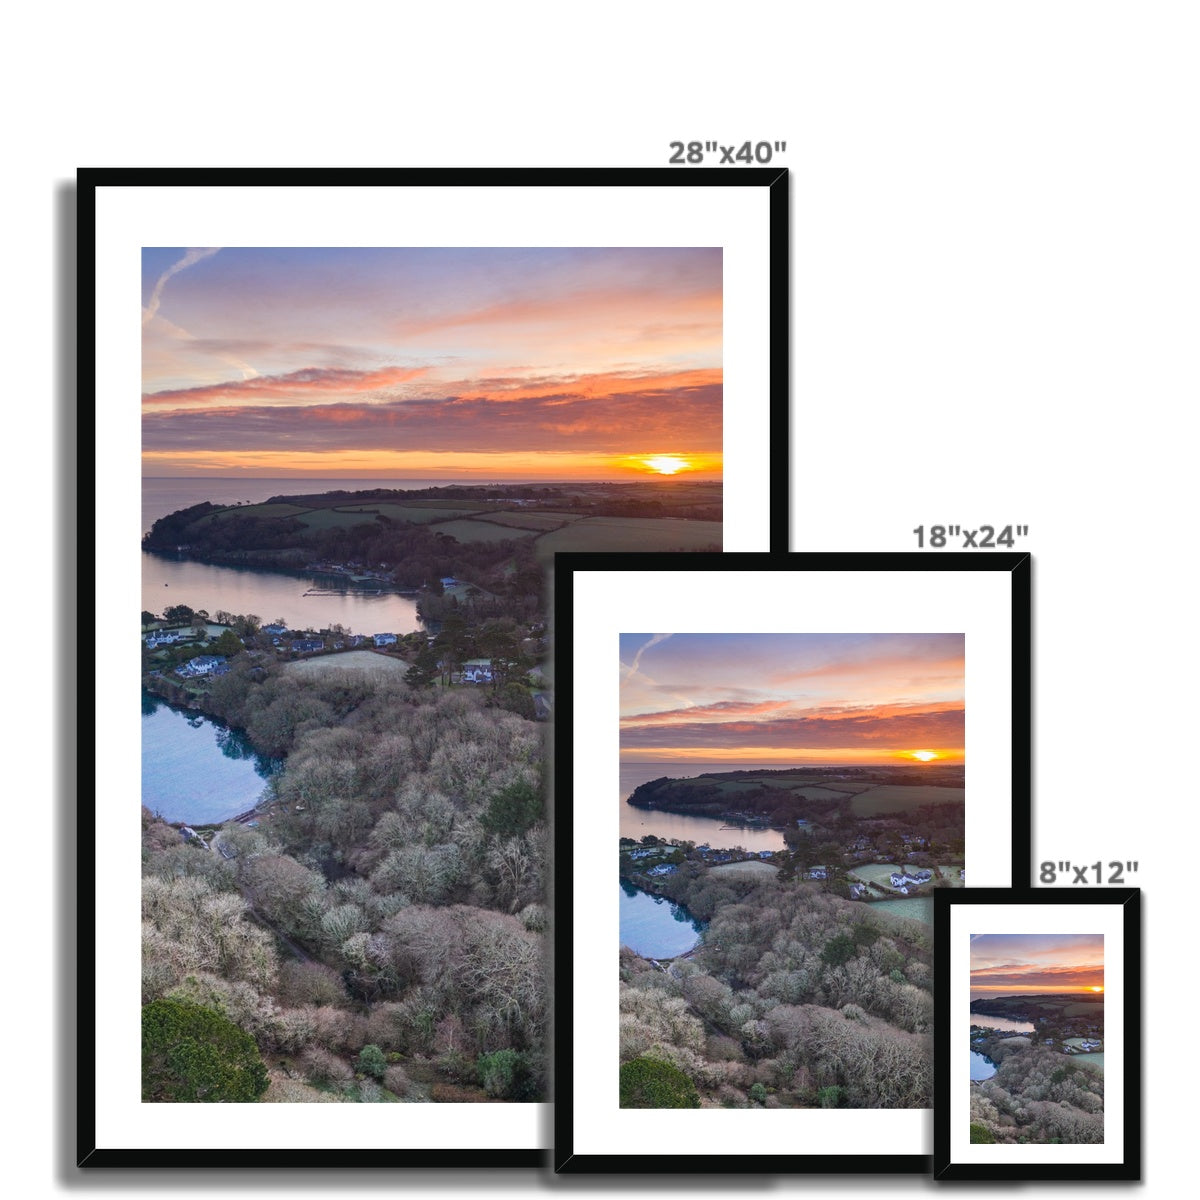 frenchmans creek sunrise frame sizes